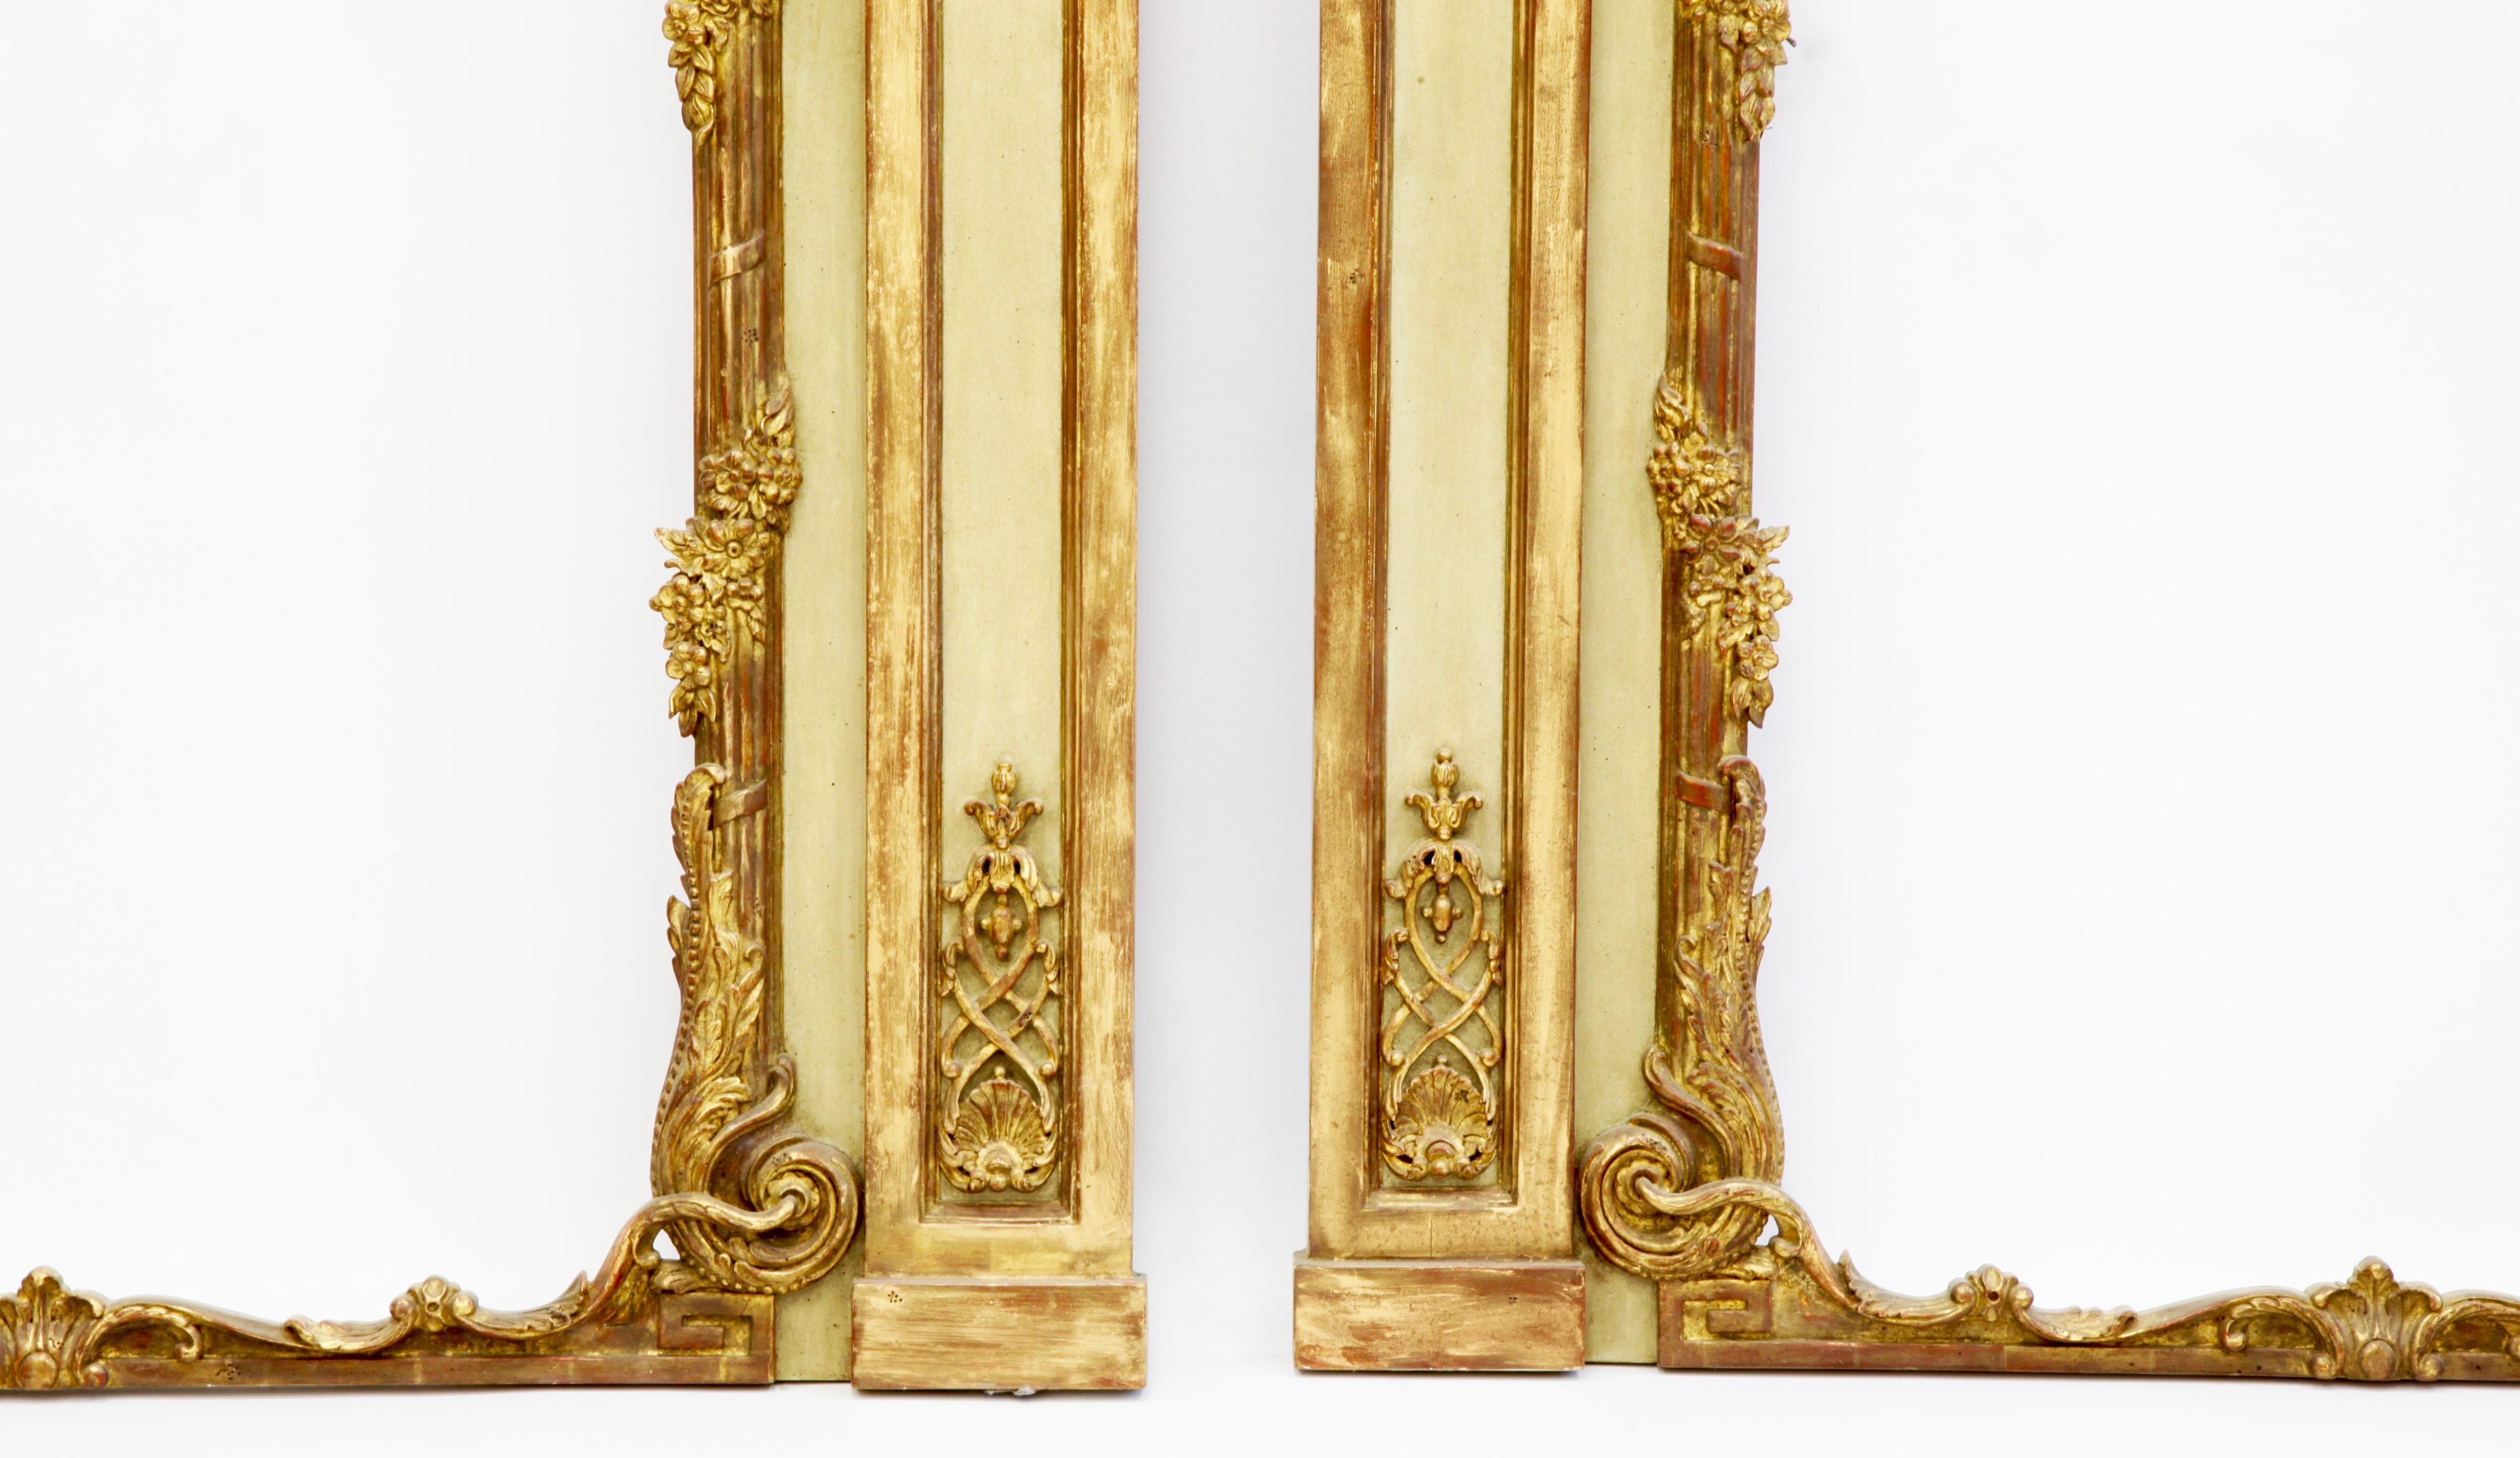 Spiegel im Stil Louis XV, handgeschnitzt von La Maison London.
Ausgeführt in einem französischen Grün mit vergoldeten Highlights.
Wird als Paar hergestellt oder kann separat verkauft werden.